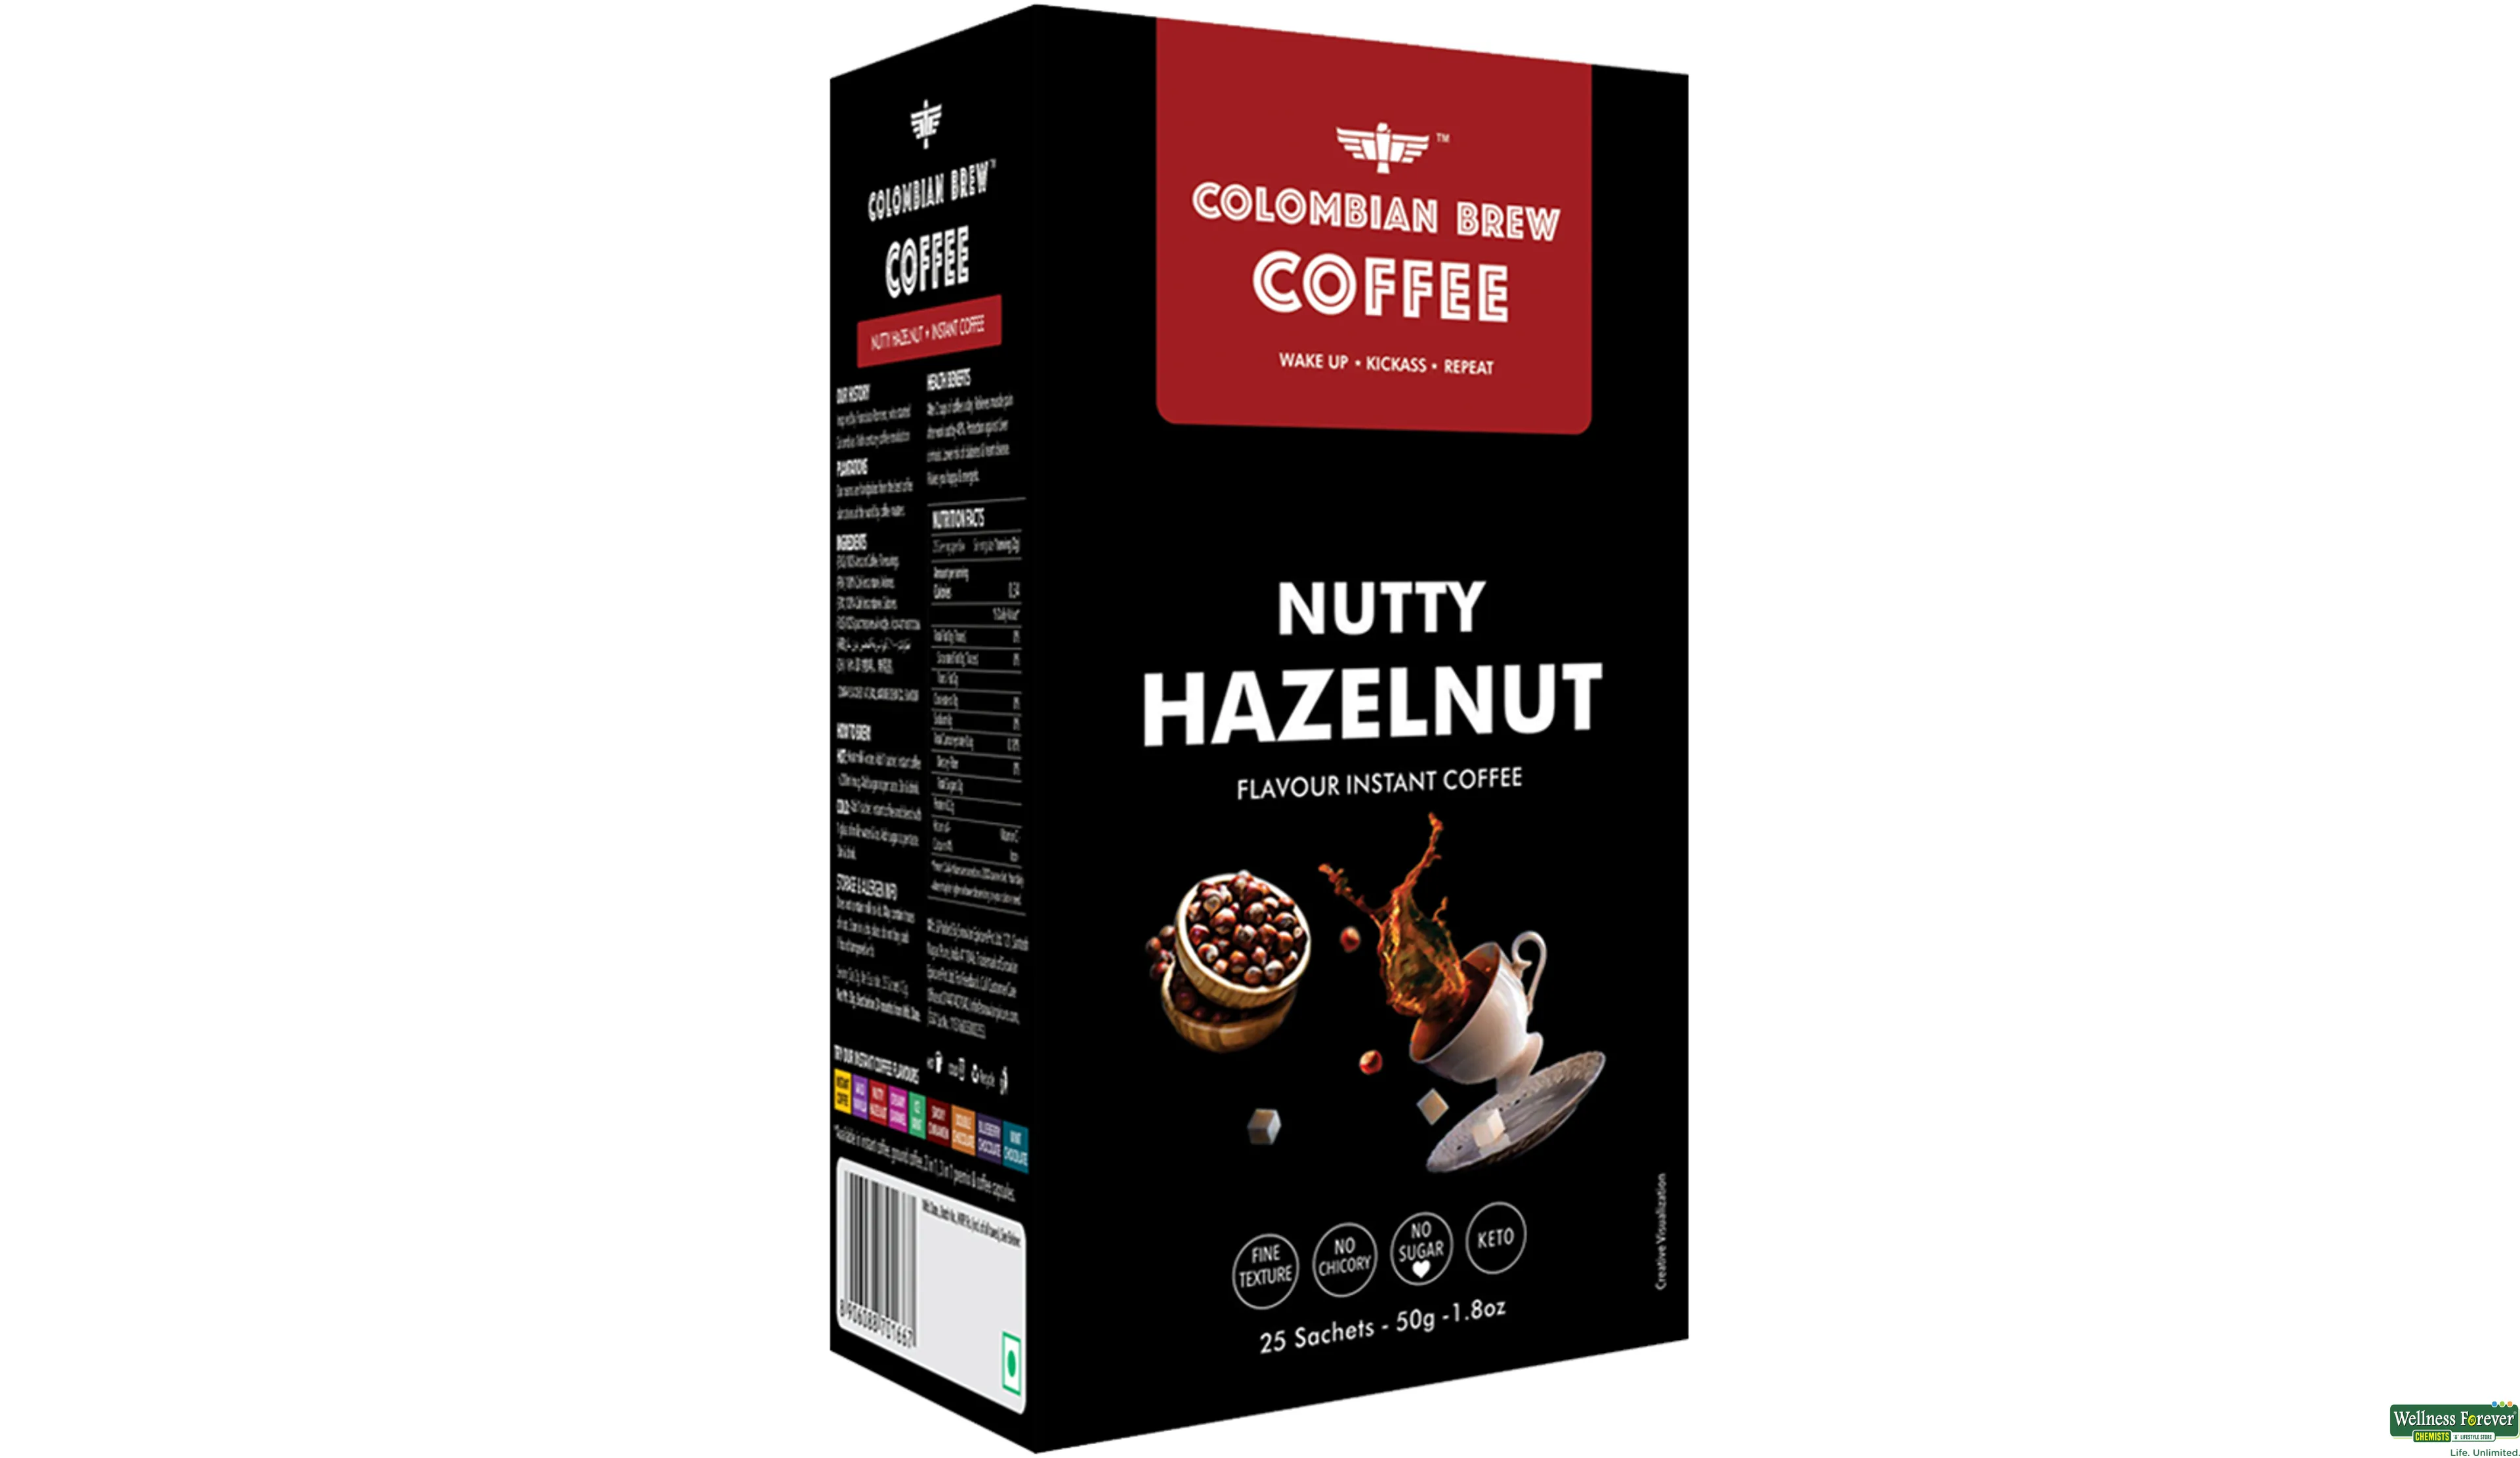 COLOMBIAN COFFEE NUTTY HAZELNUT 50GM- 1, 50GM, 